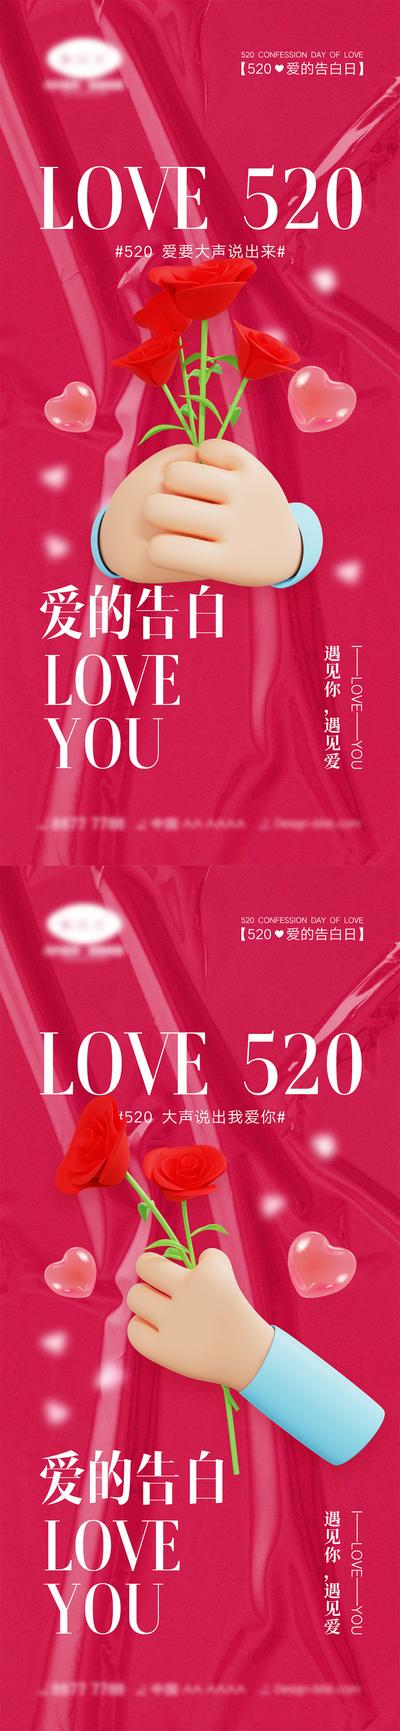 【南门网】海报 活动 520 情人节 告白日 love 爱情 喜鹊 牛郎织女 七夕 爱心 气球 214 花朵 爱的告白